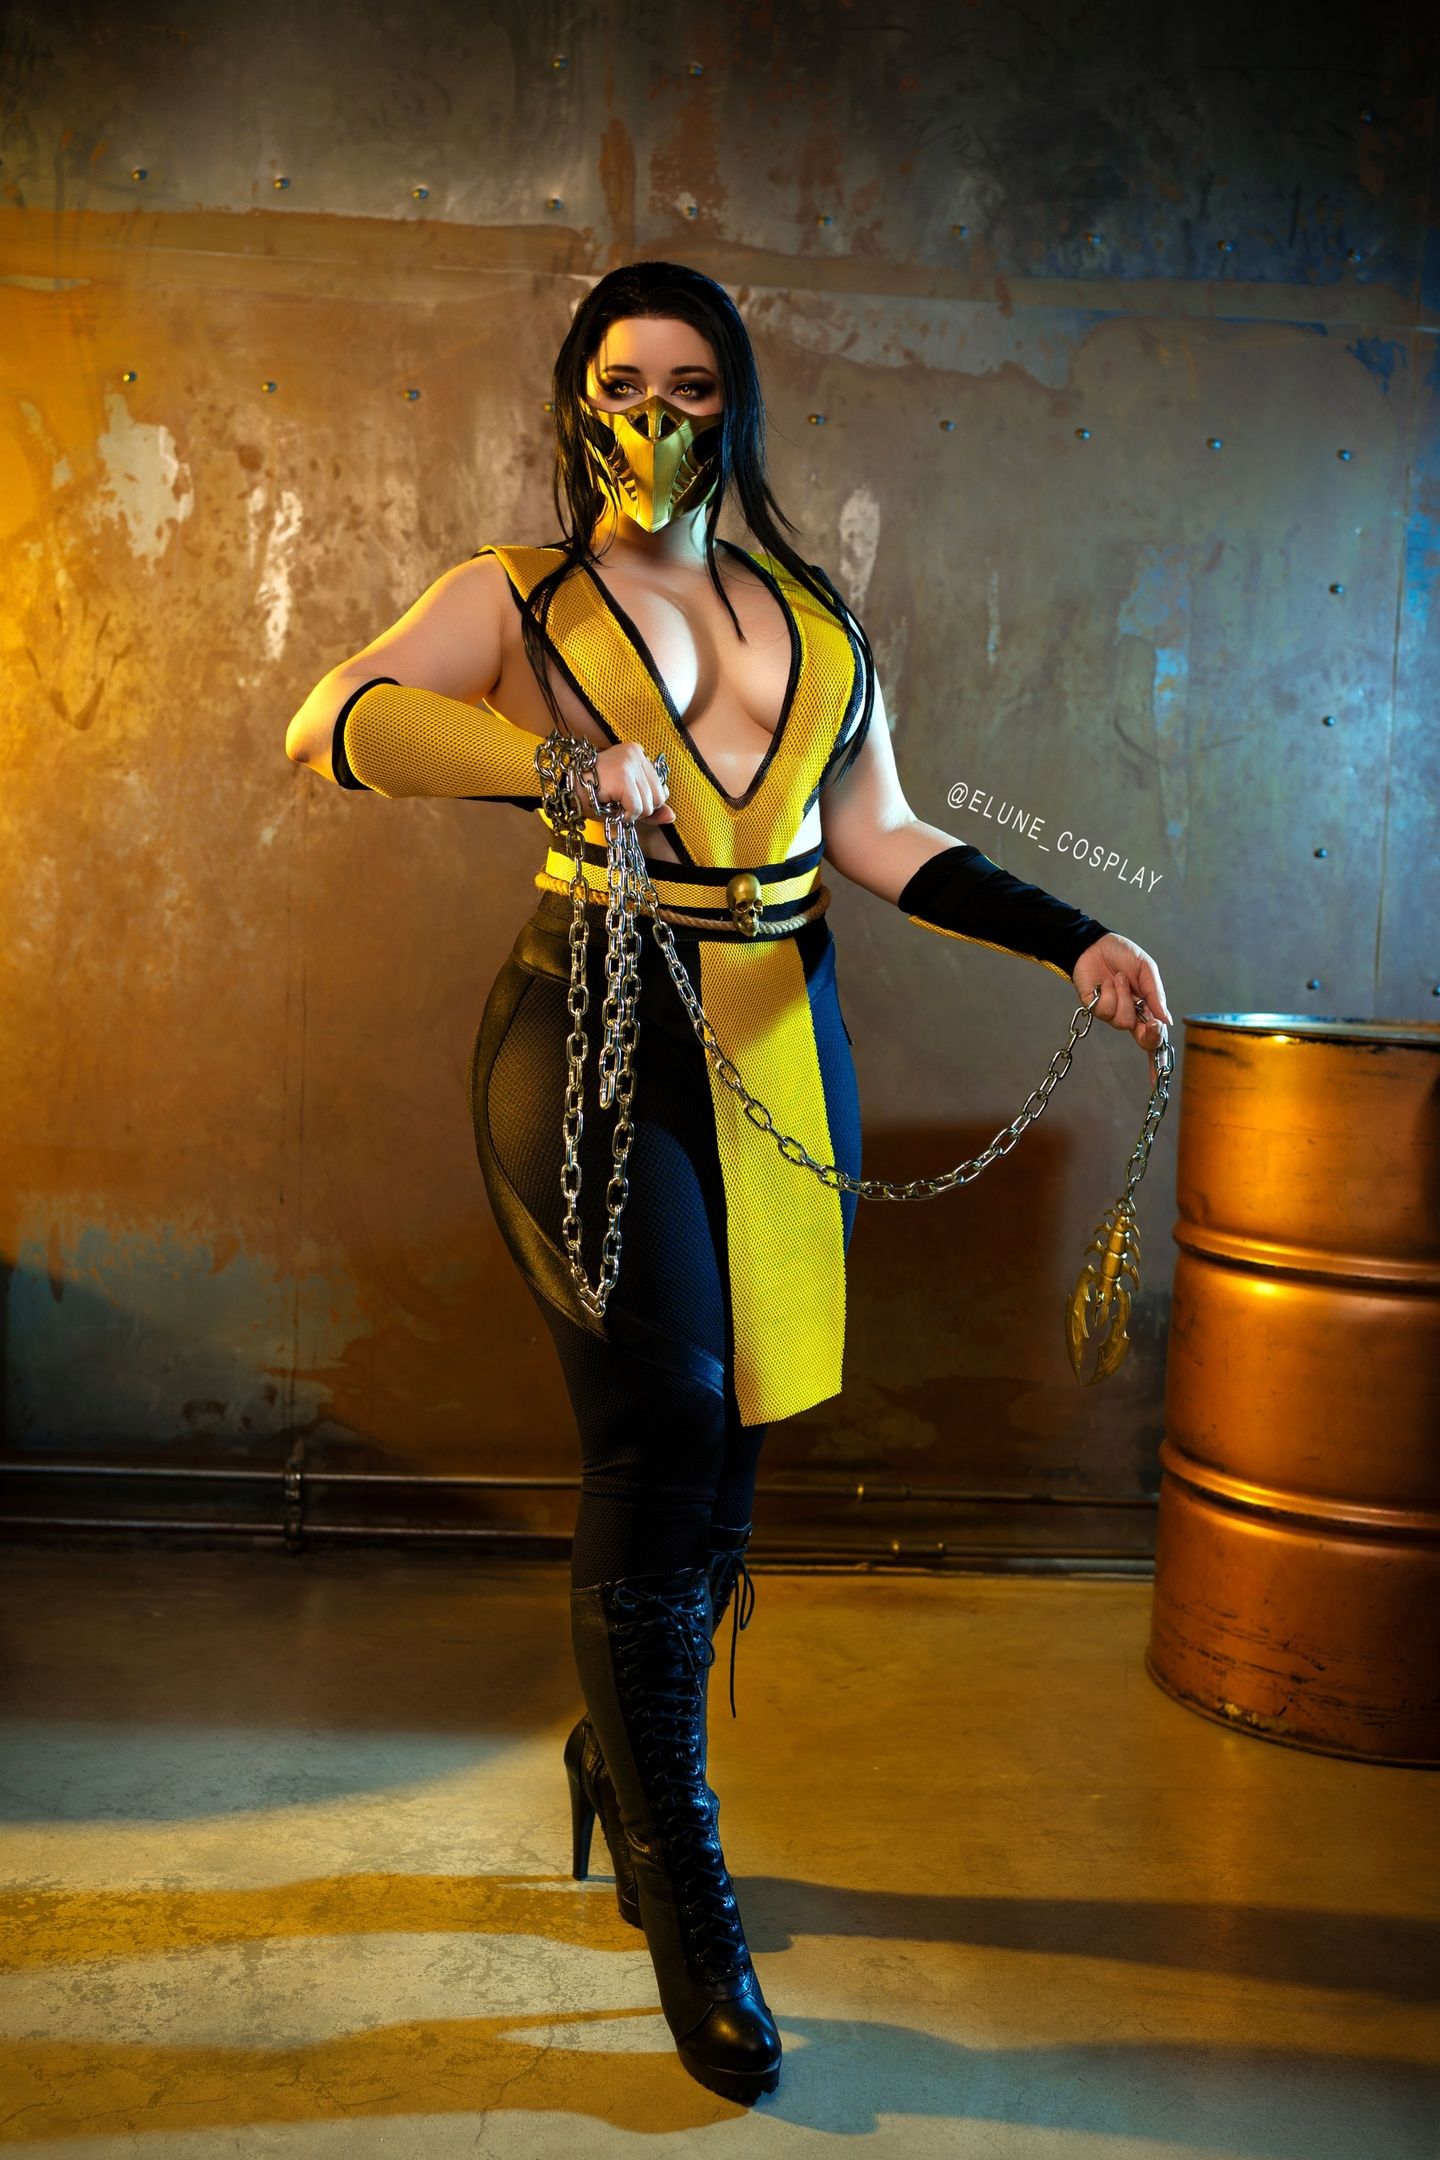 Женская версия Скорпиона из Mortal Kombat. Косплей: Elune_cosplay. Источник: vk.com/elune_cosplay